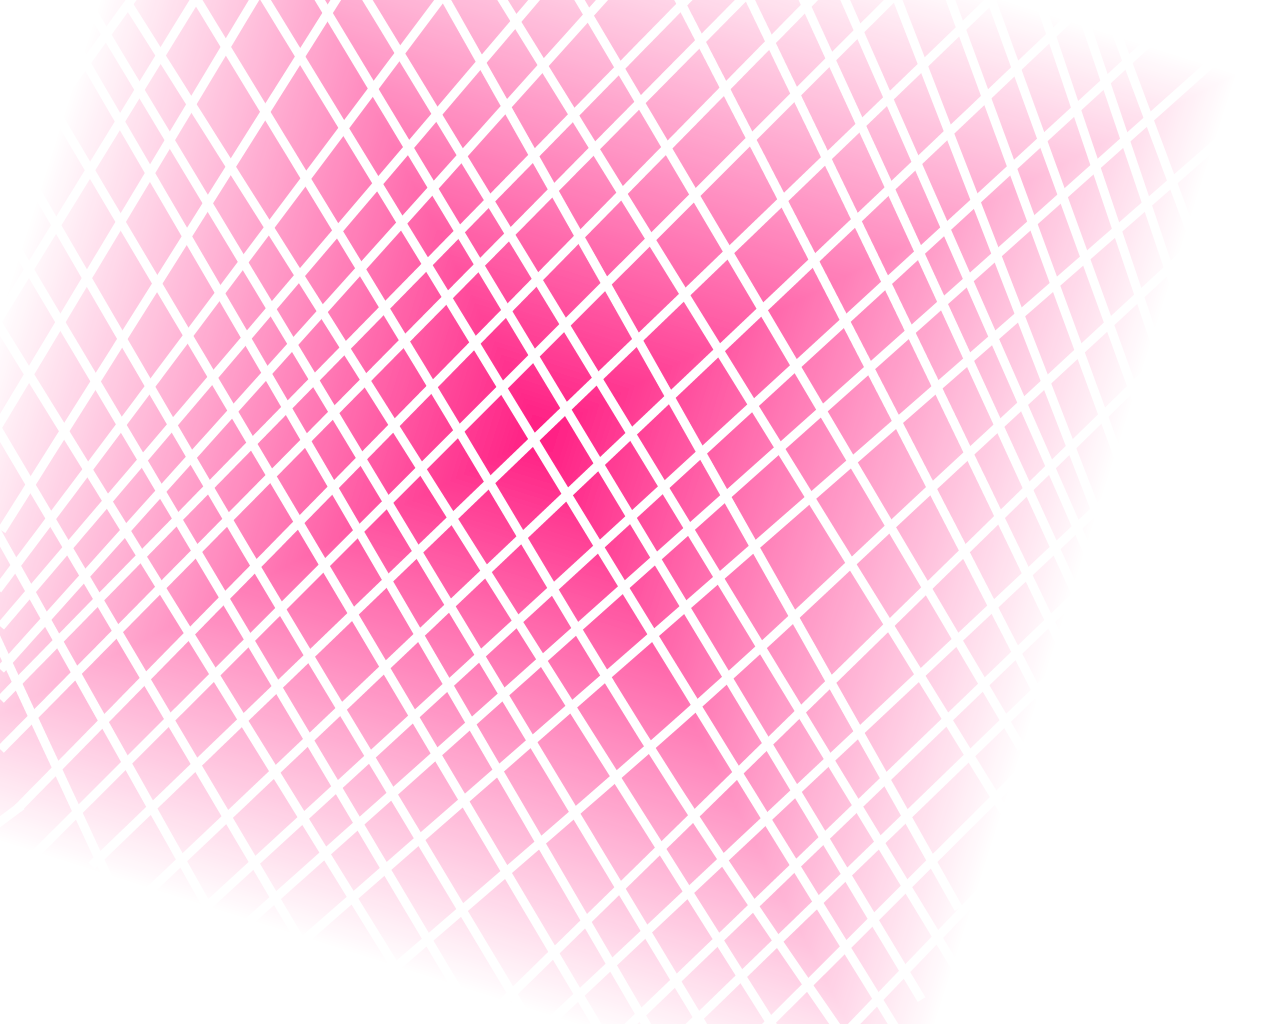 Random pink background